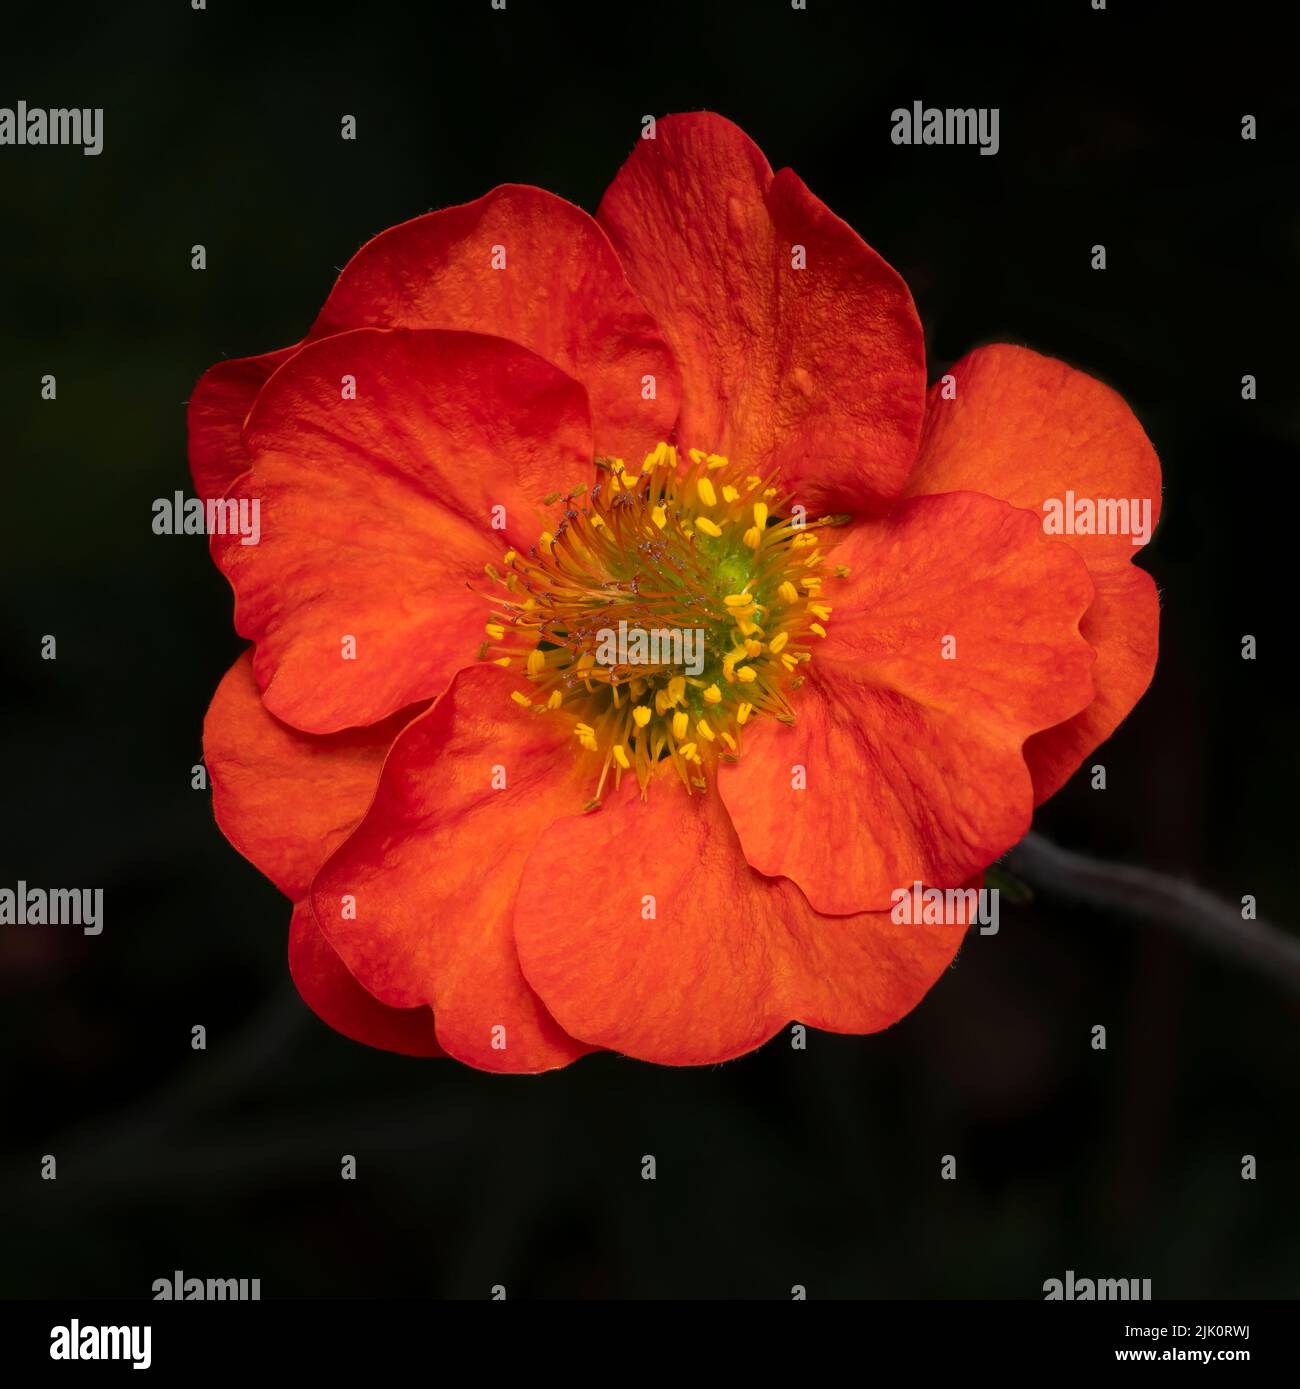 Un primer plano de una hermosa flor geum de color rojo brillante, fotografiada sobre un fondo oscuro Foto de stock